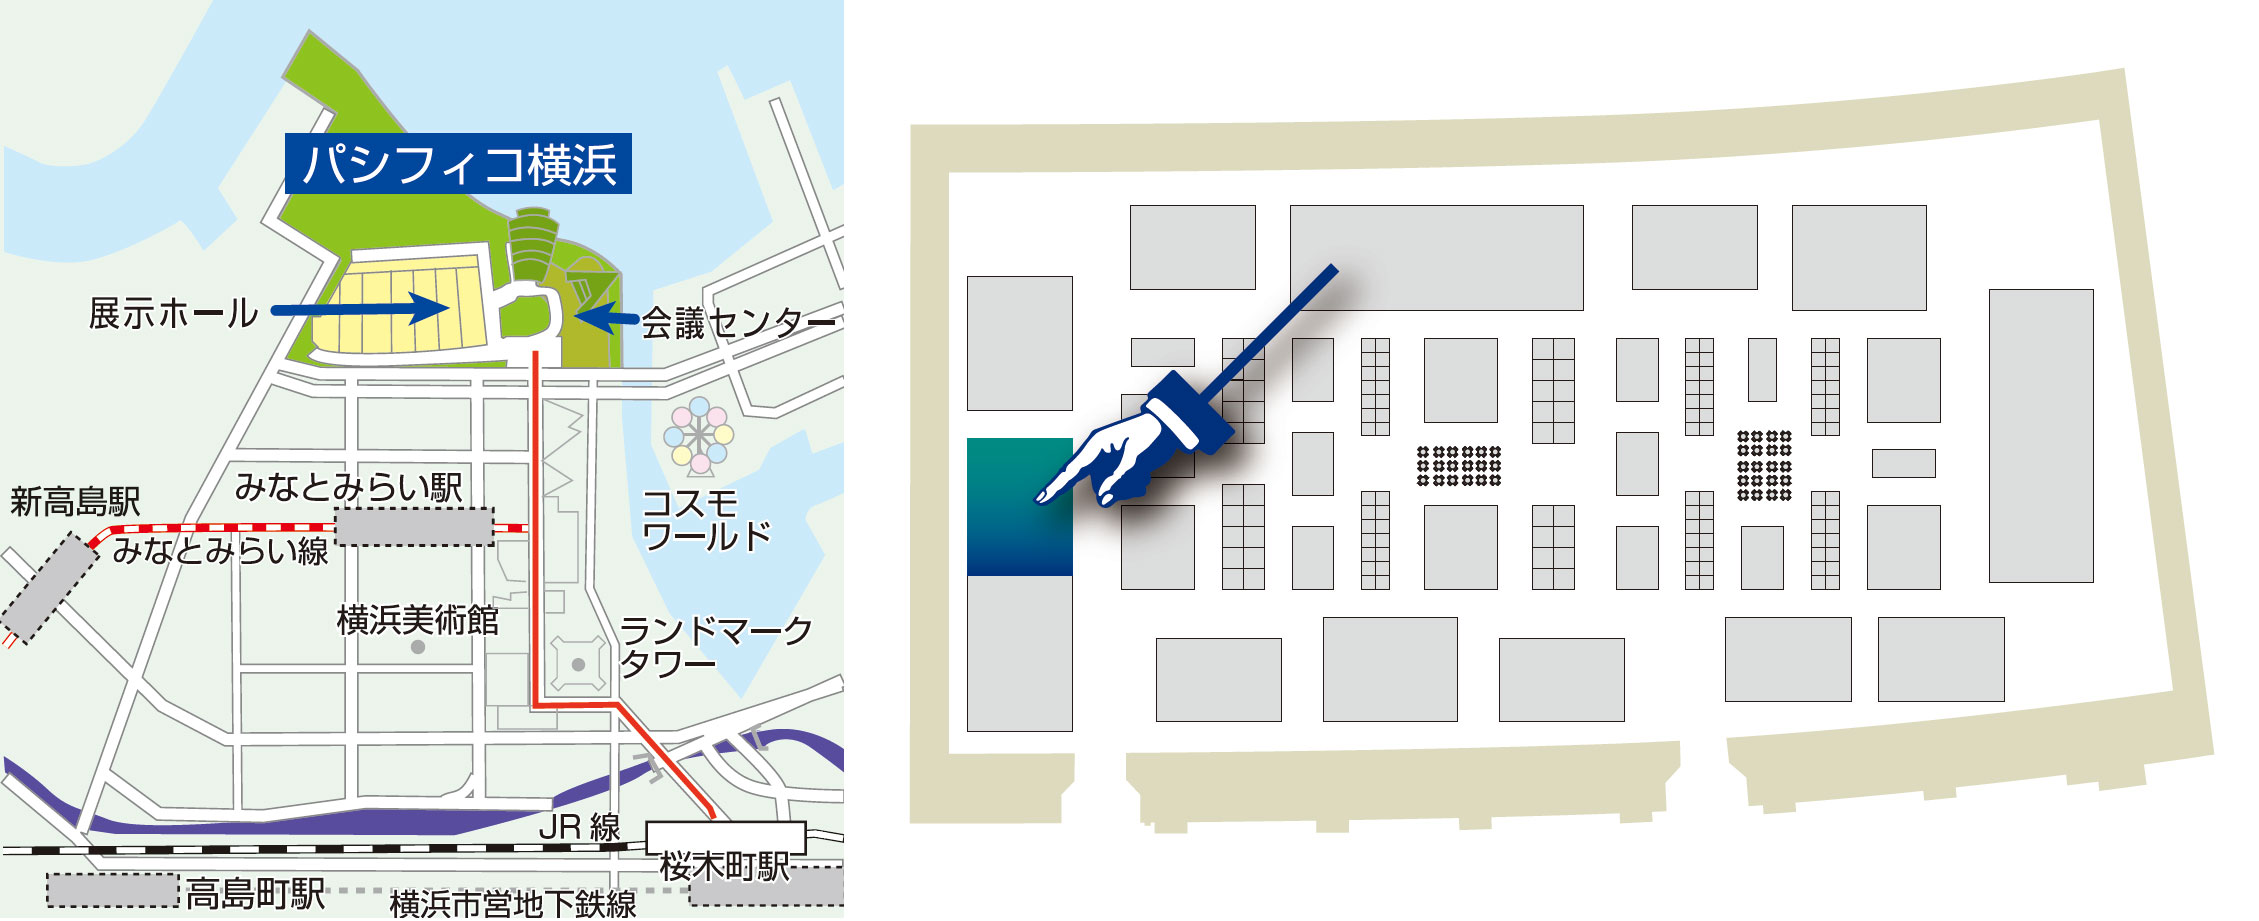 パシフィコ横浜会議センター 地図